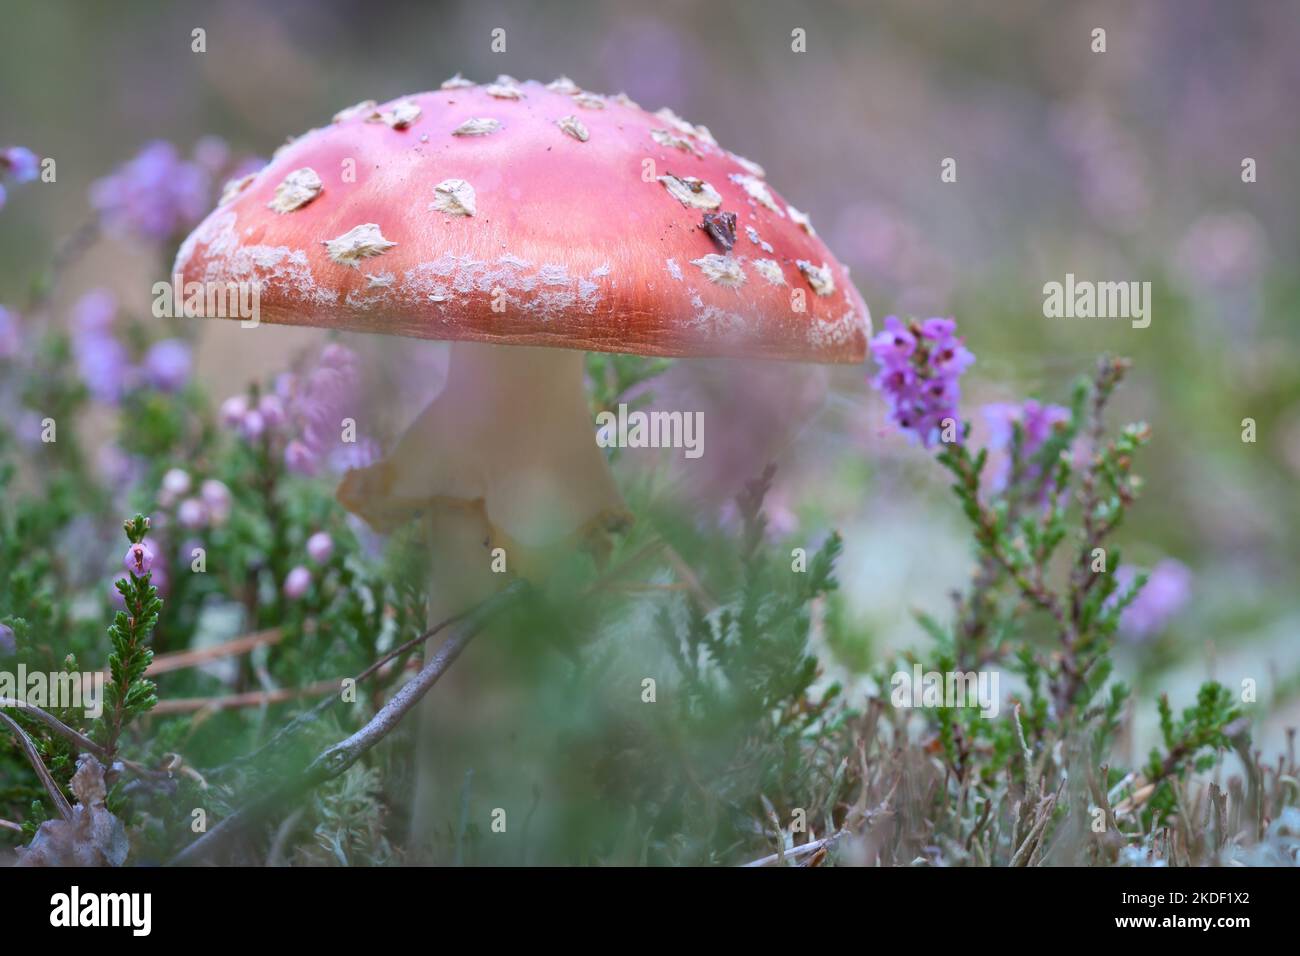 Krötenhocker in einem Heidefeld im Wald. Giftiger Pilz. Rote Mütze mit weißen Flecken. Nahaufnahme der Natur im Wald Stockfoto